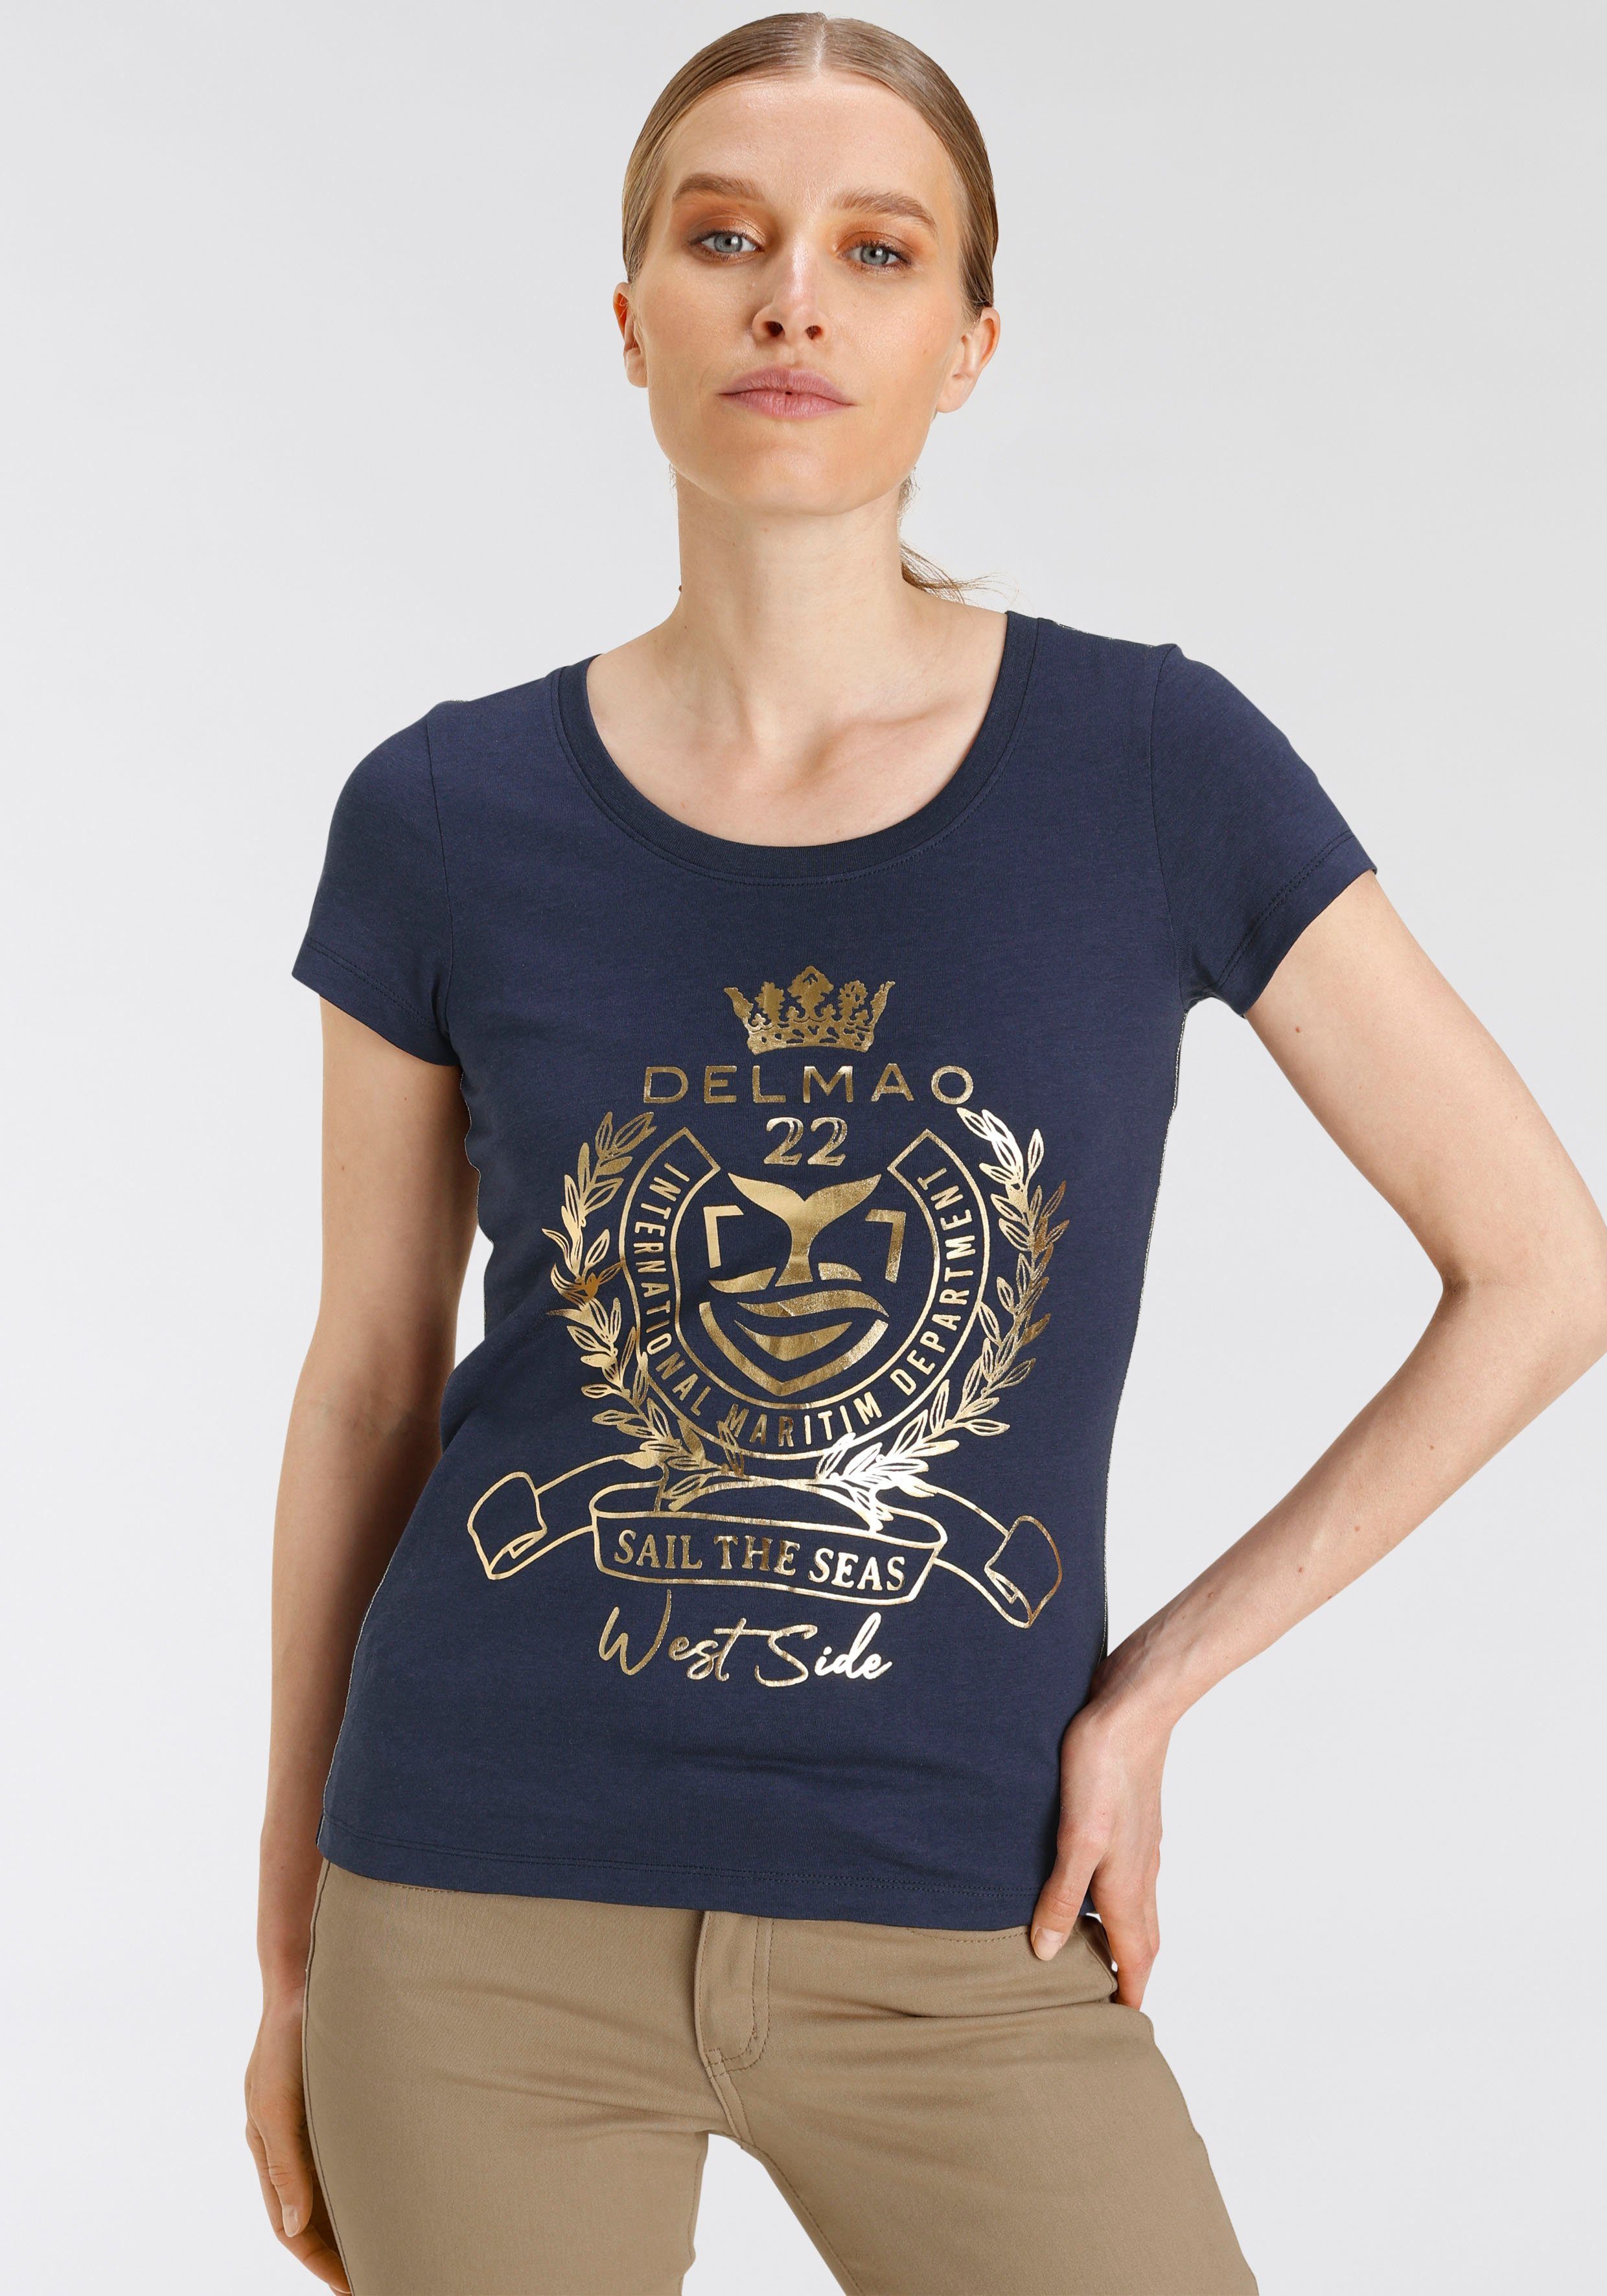 hochwertigem, DELMAO NEUE mit goldfarbenem MARKE! - T-Shirt Folienprint